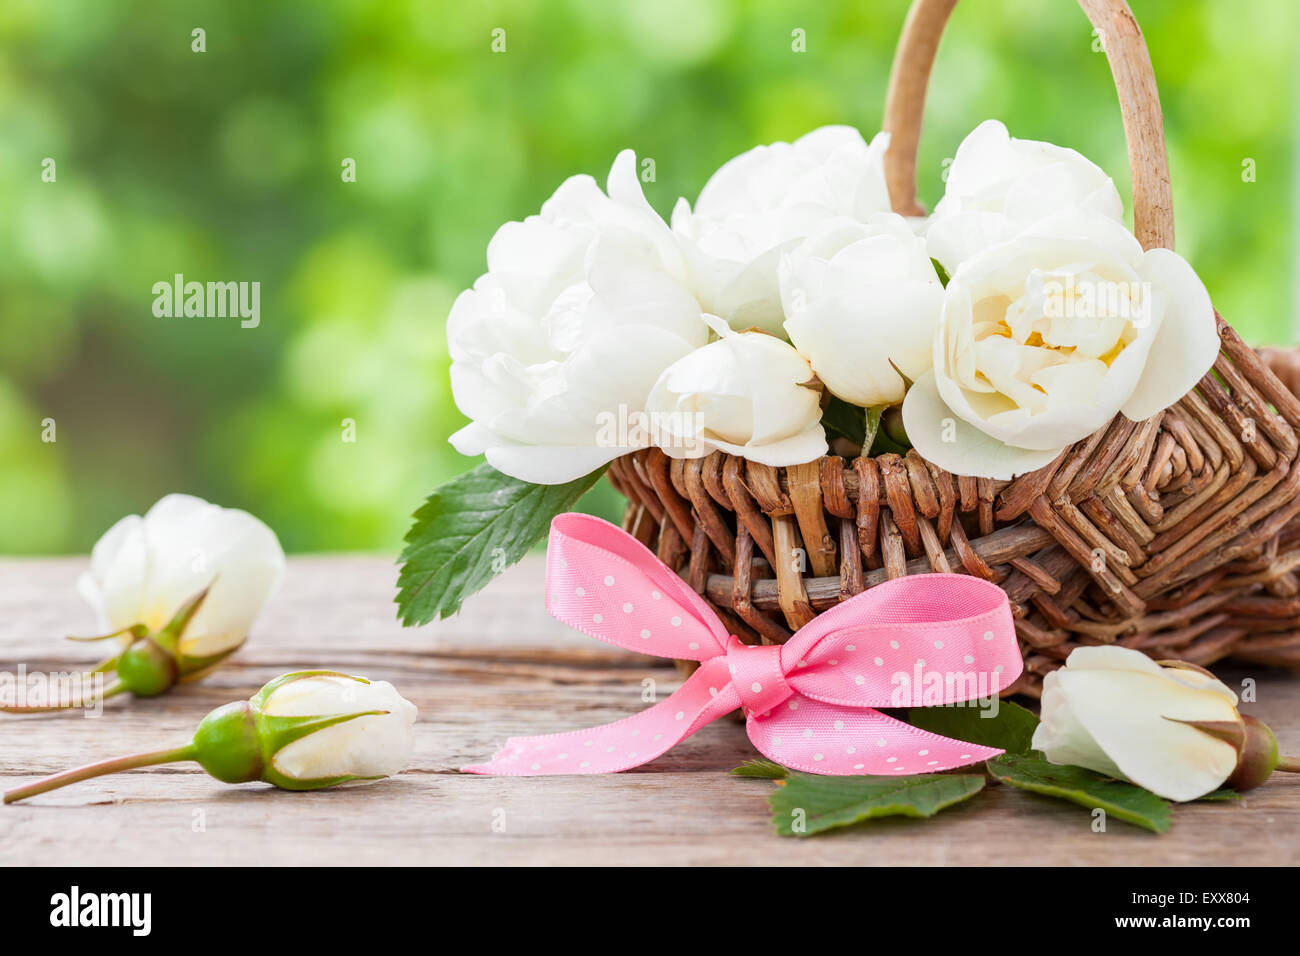 Weidenkorb mit wilden Rosen-Blumen und rosa Schleife. Hochzeit oder Geburtstag Dekoration im rustikalen Stil. Stockfoto